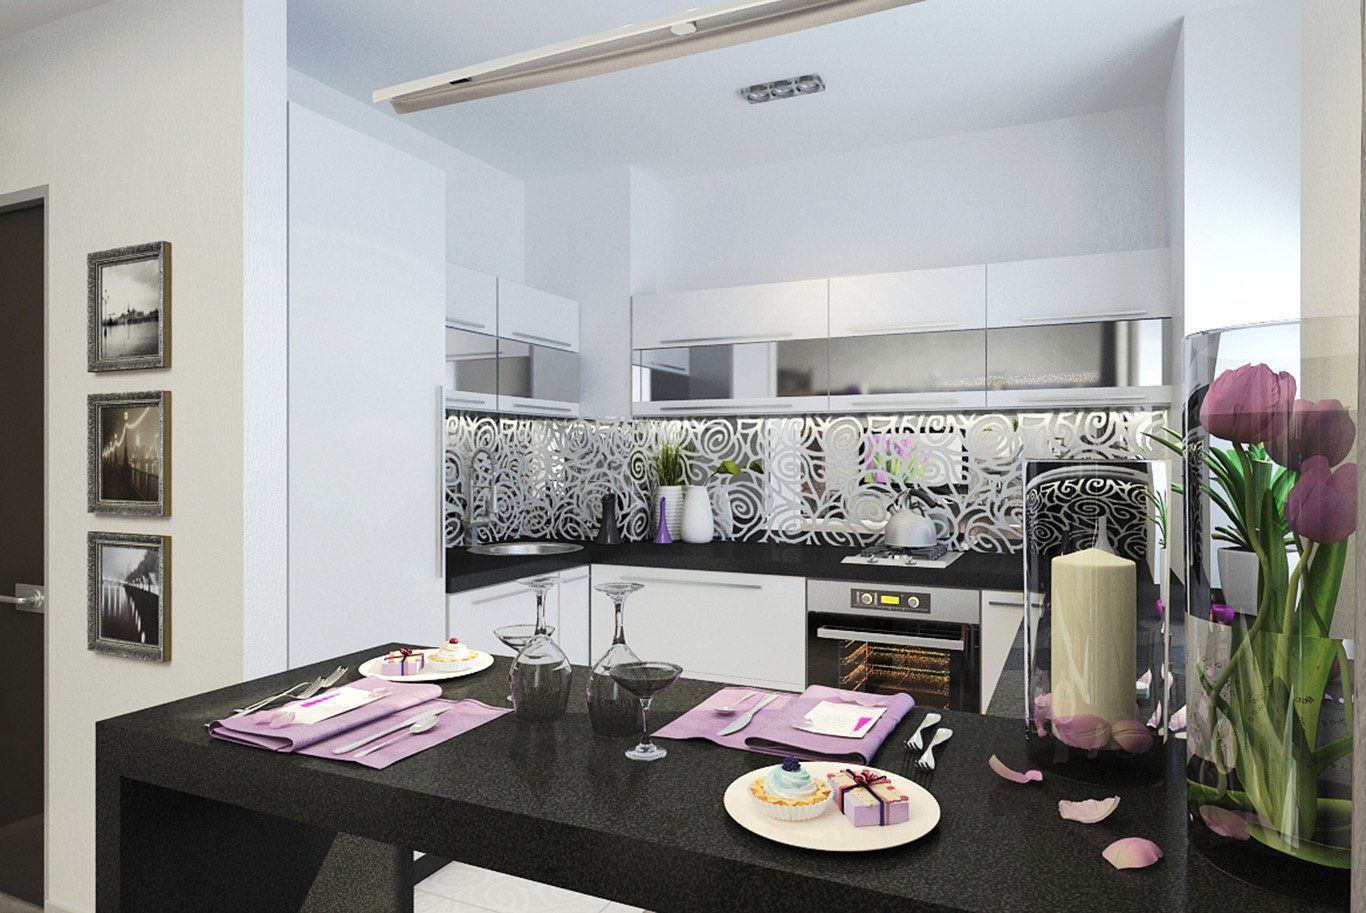 Кухня Джуни угловая белого цвета с зеркальными ставками 